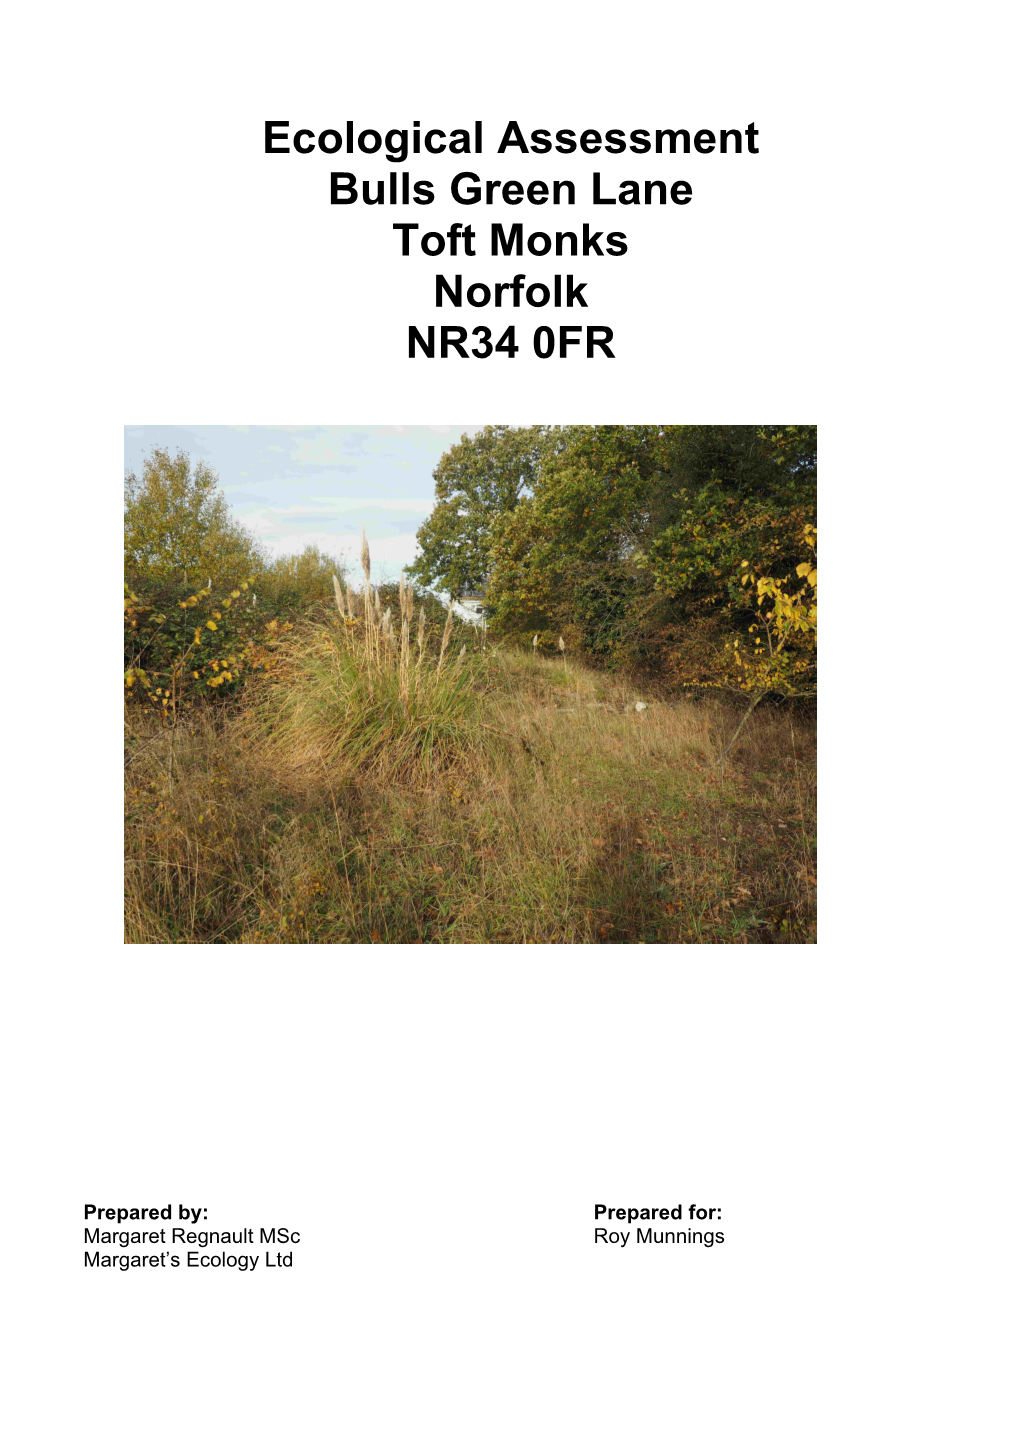 Ecological Assessment Bulls Green Lane Toft Monks Norfolk NR34 0FR